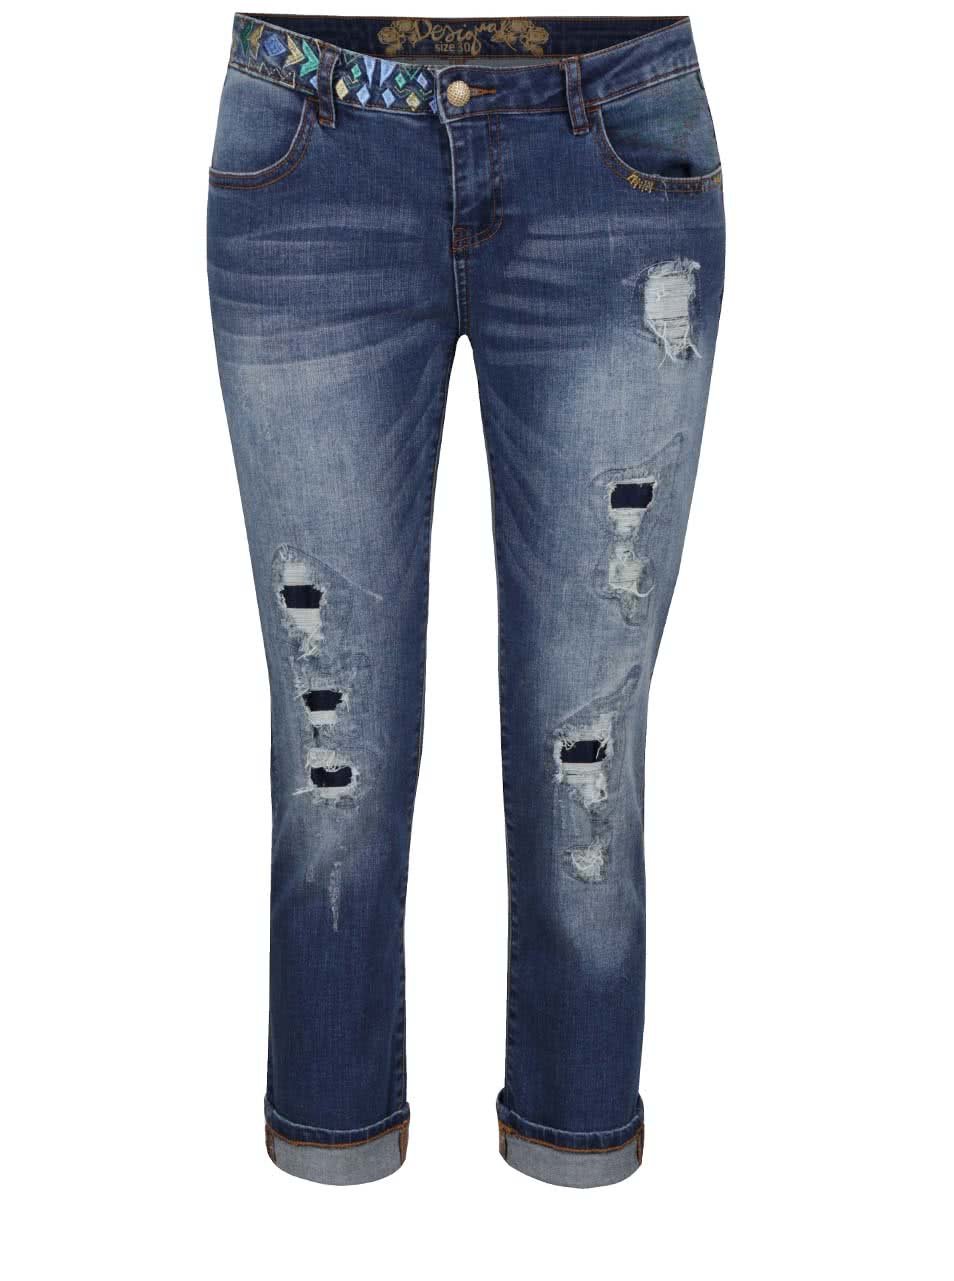 Modré osminkové džíny s výšivkou Desigual Slim